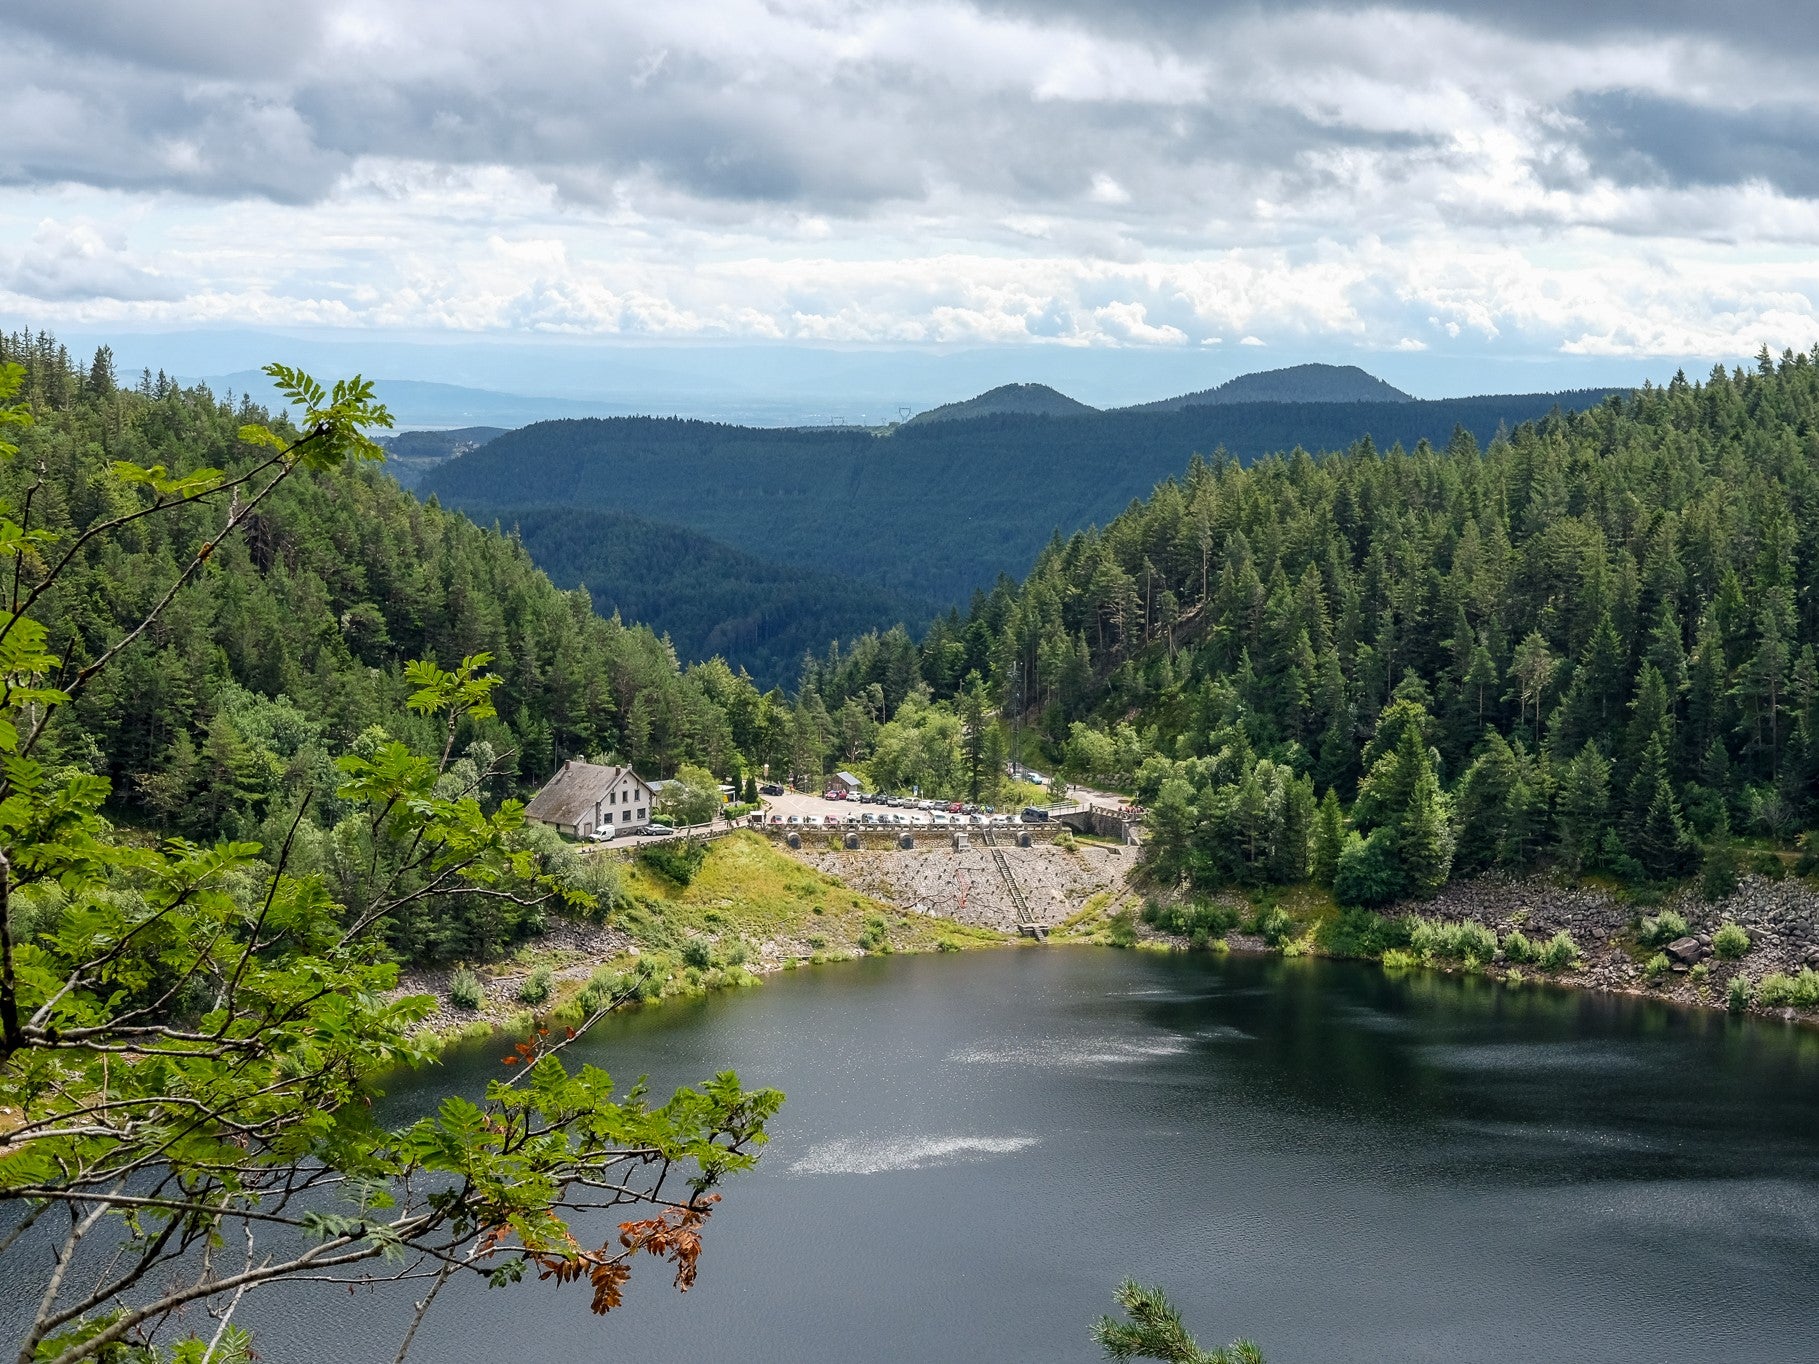 Tour des quatre lacs / Hike of the four lakes (Vosges, France) - 19.1km